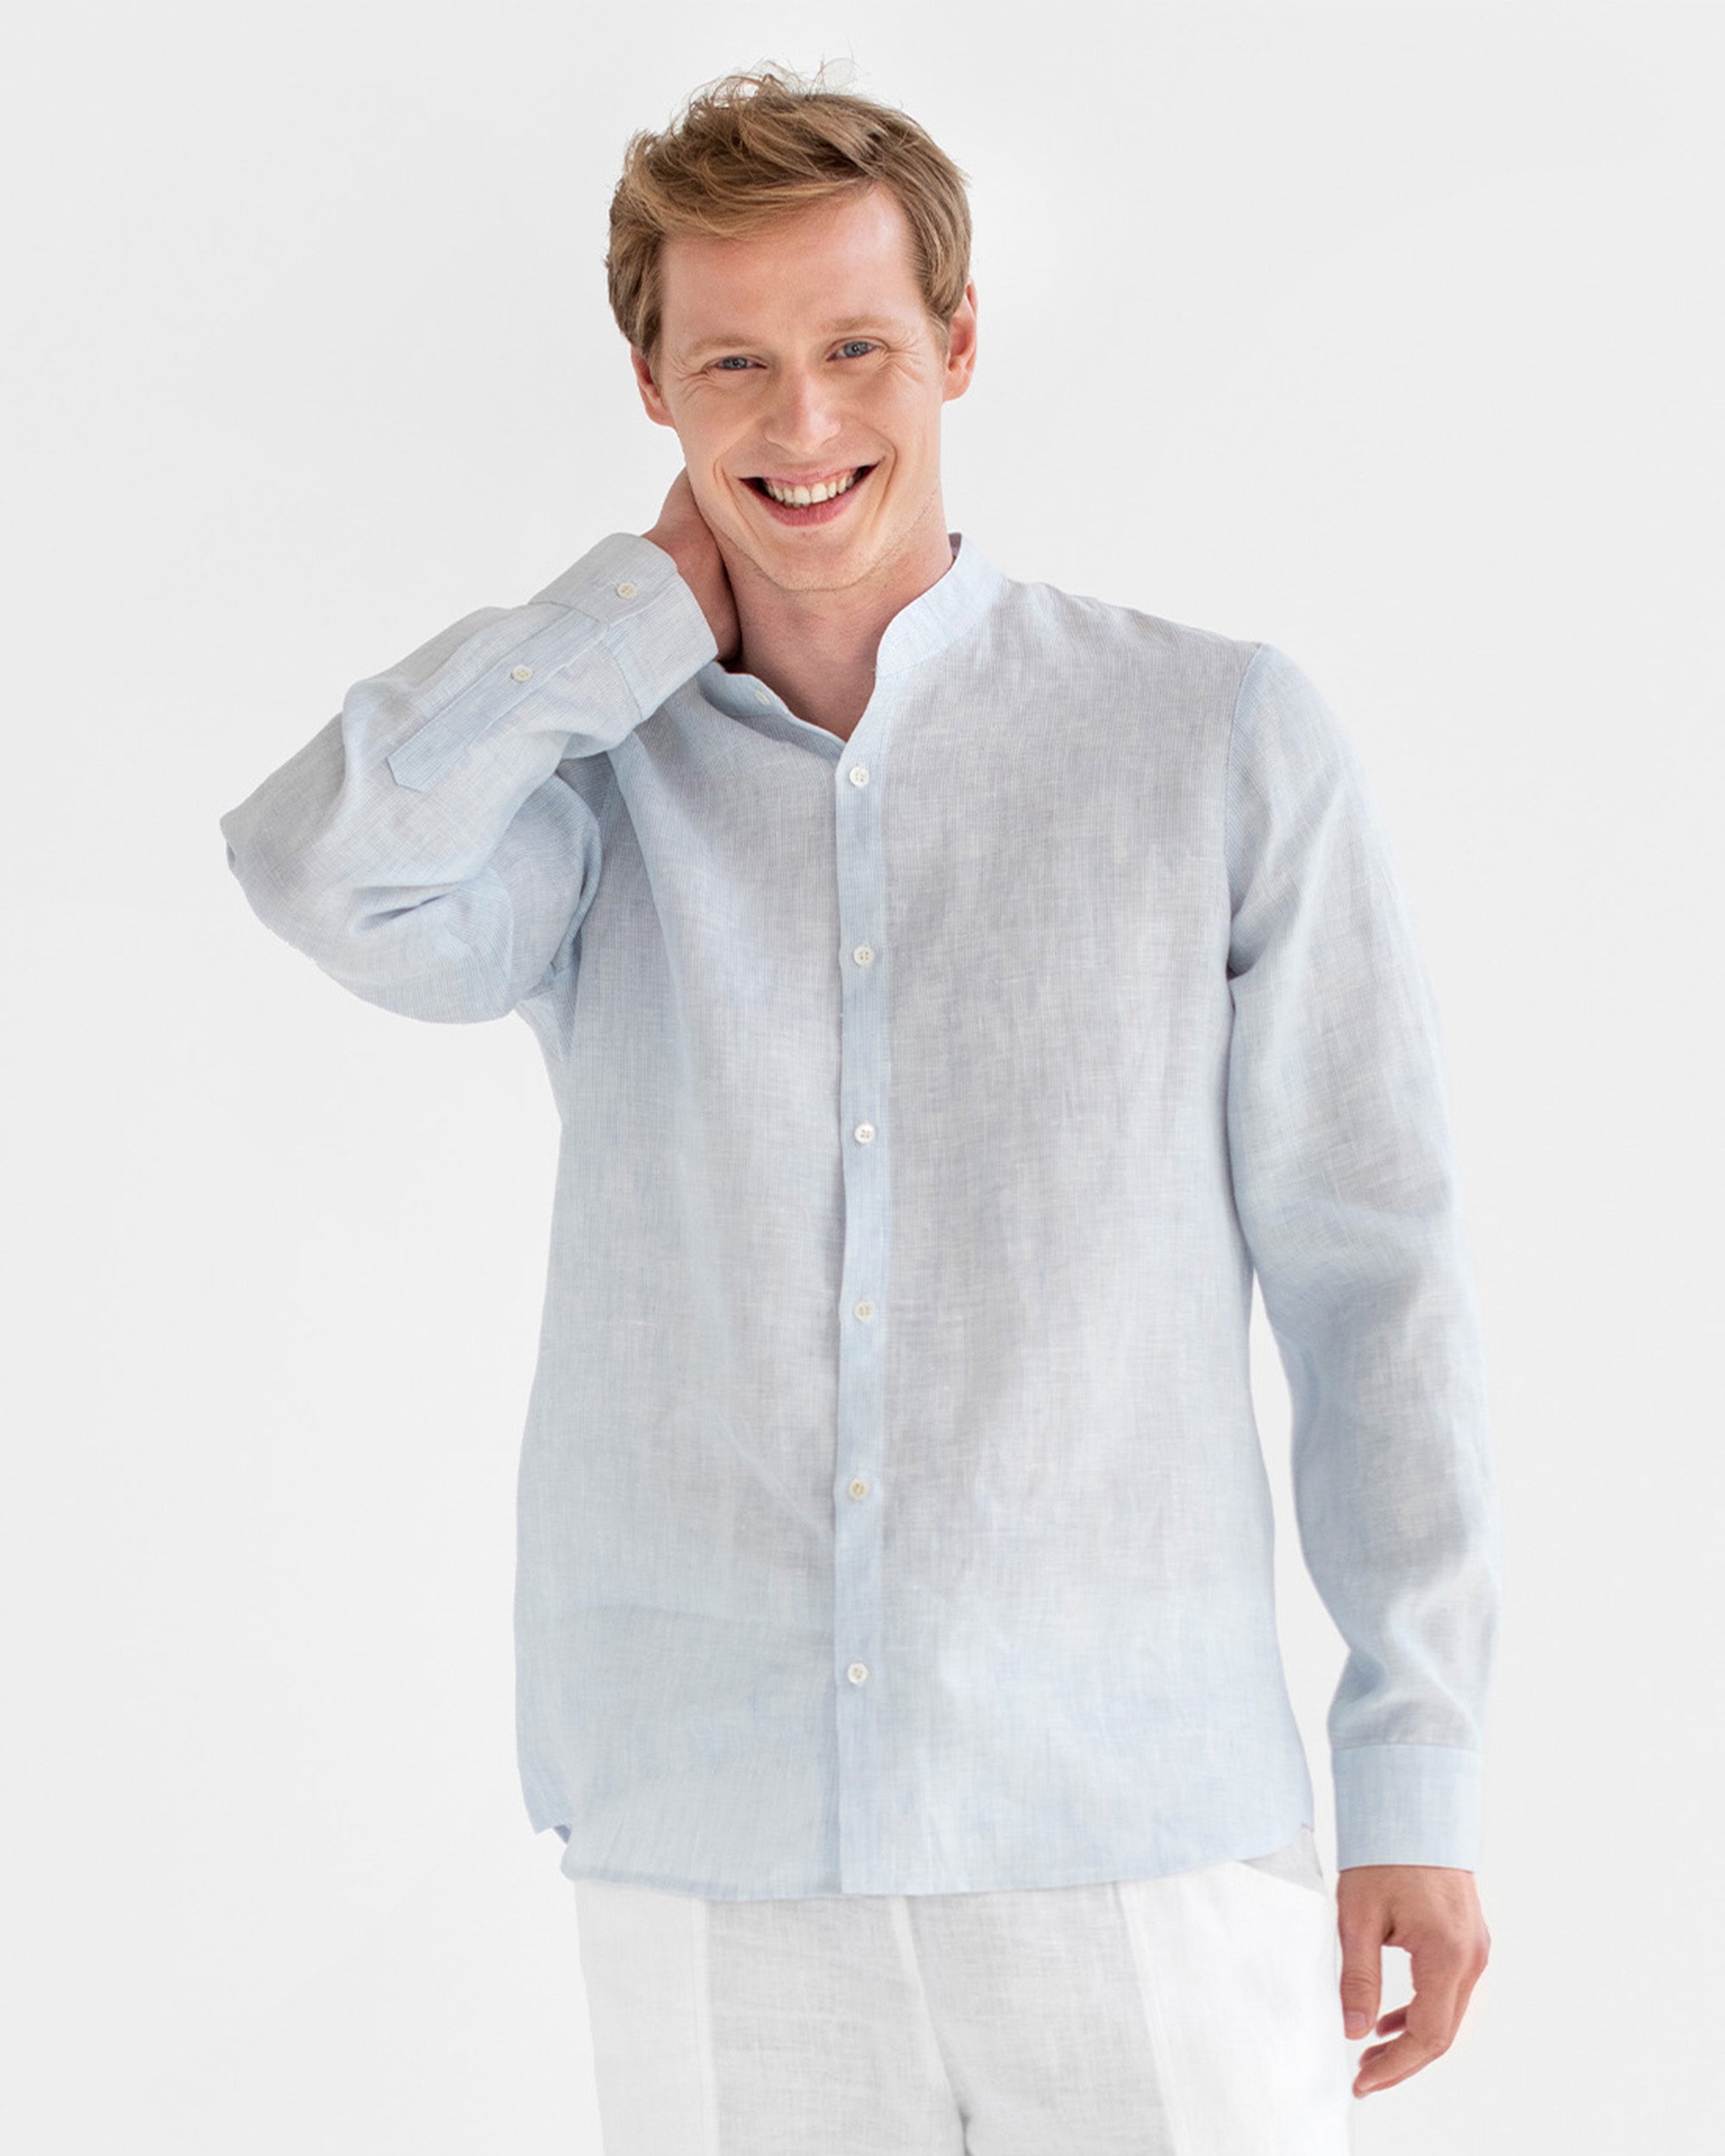 Men's Linen Band Collar Shirt BONAIRE in Pinstripe Blue | MagicLinen